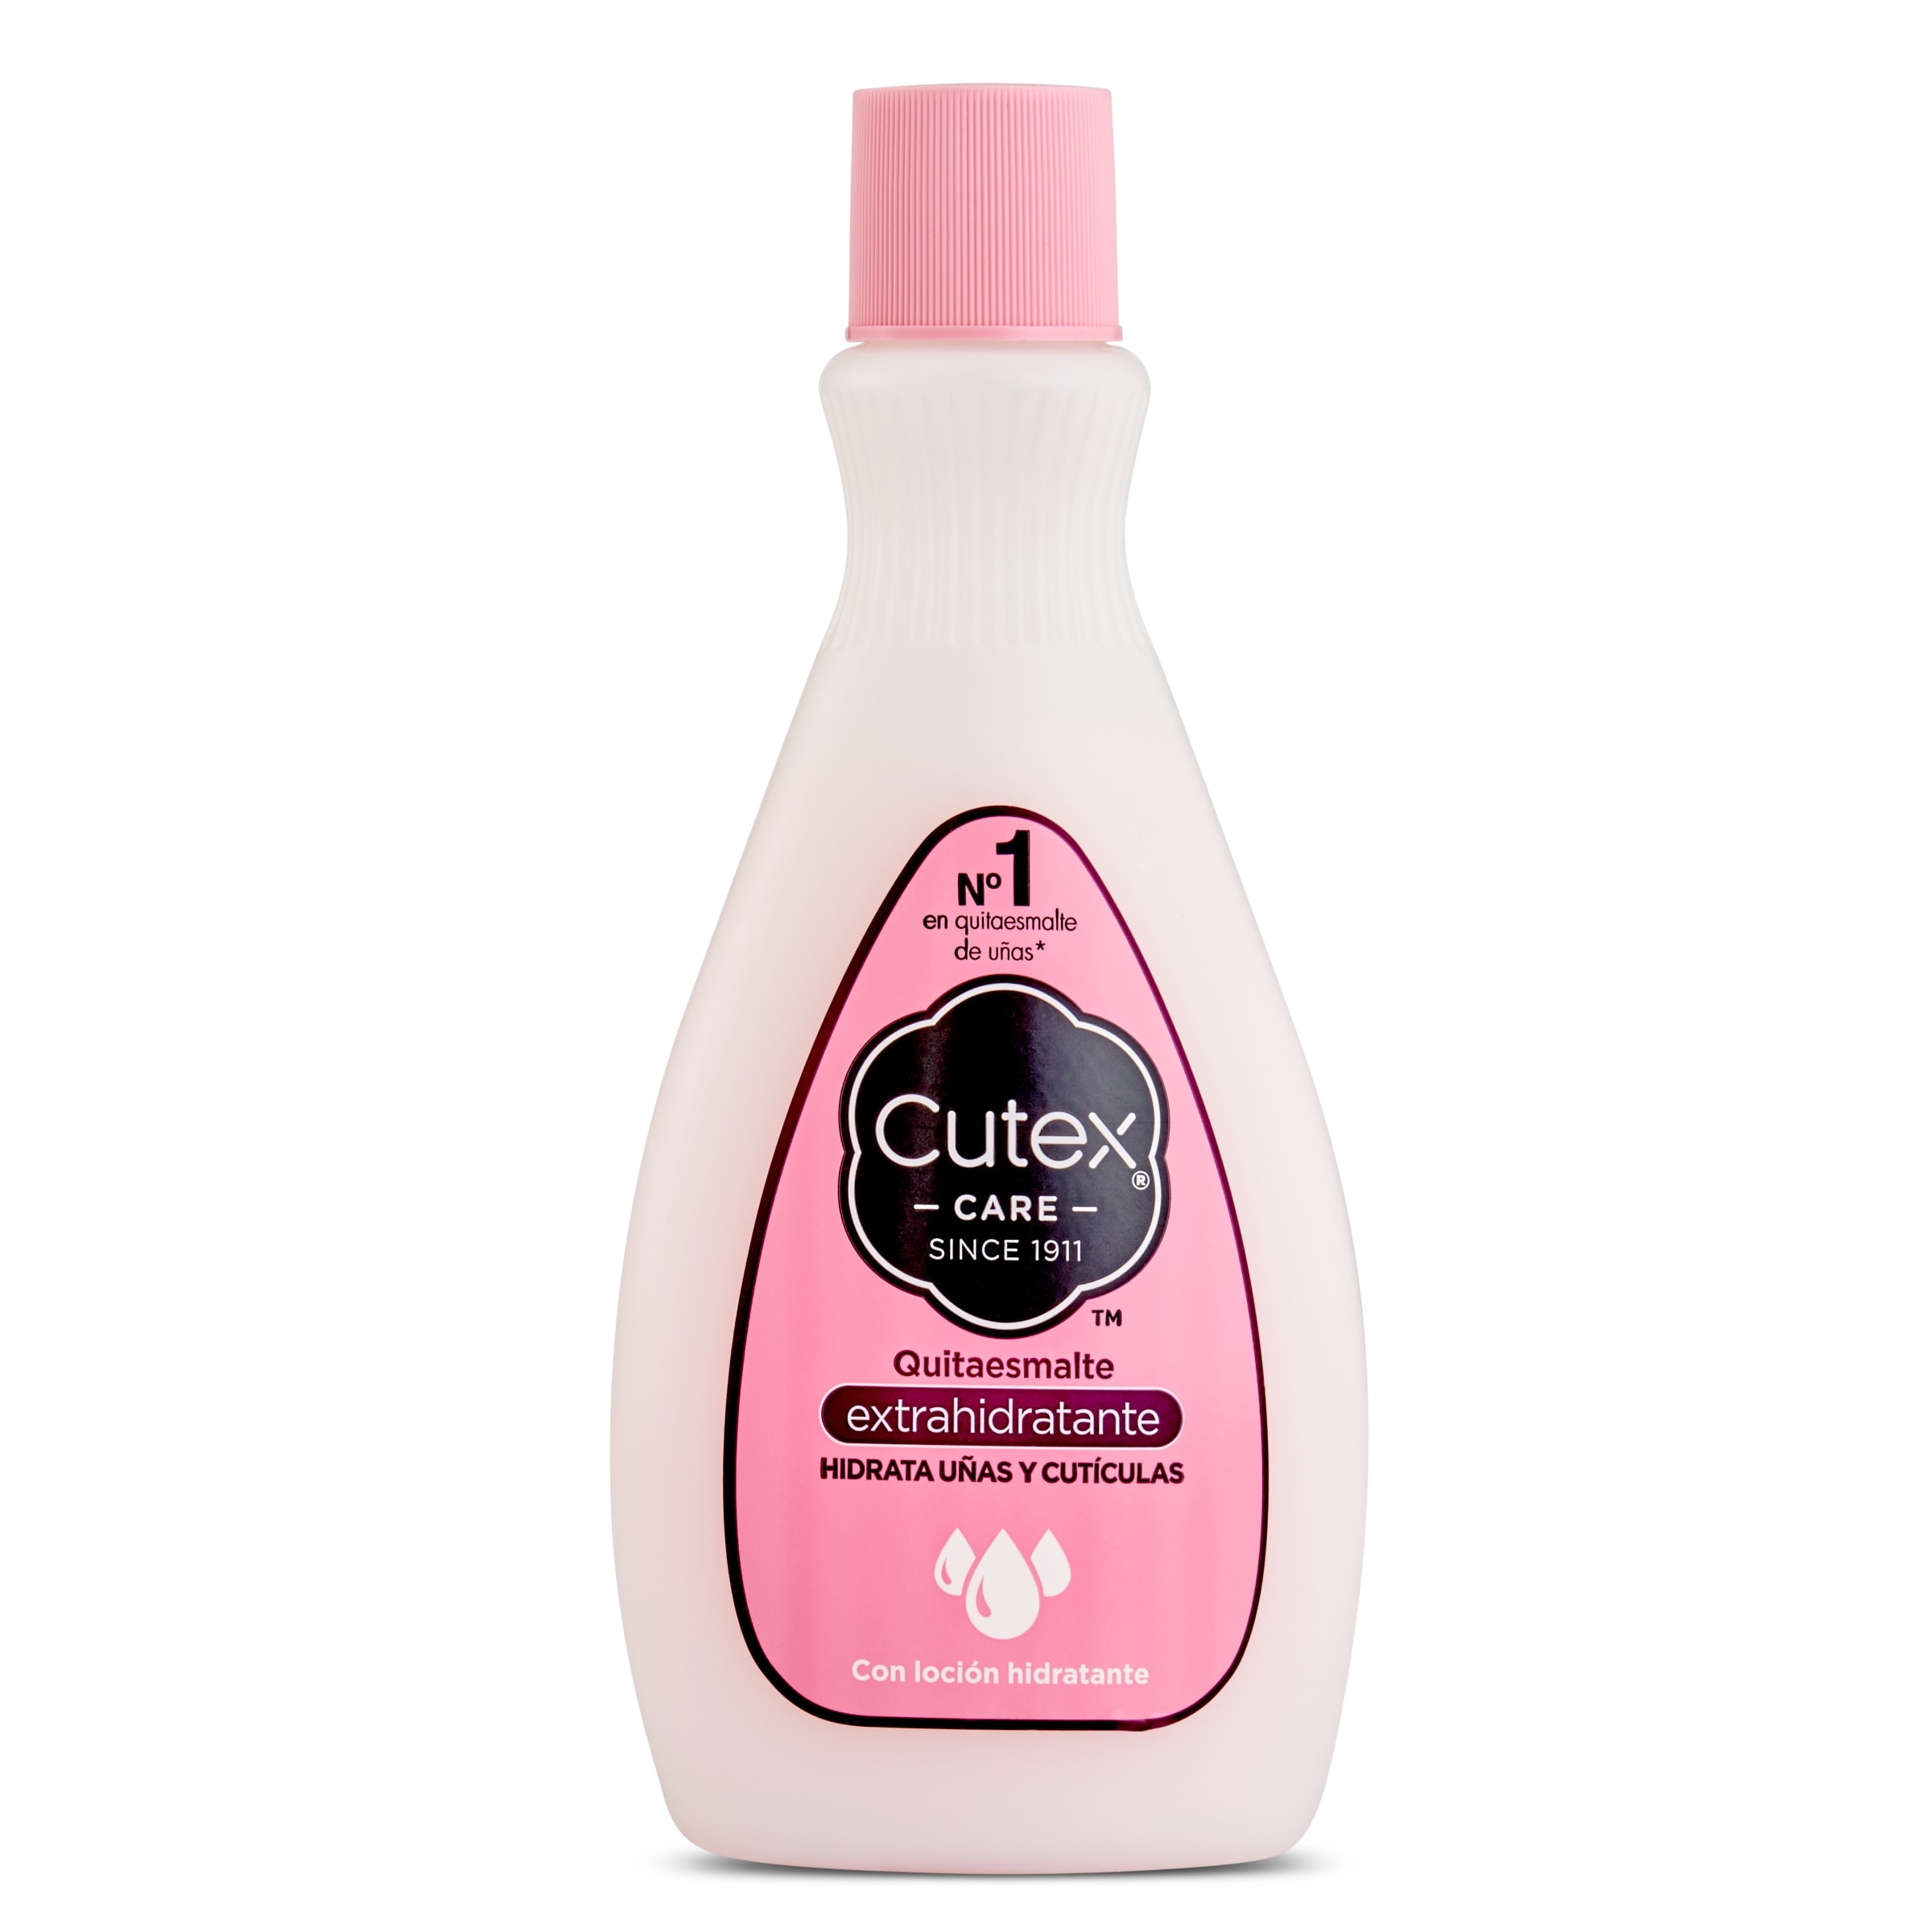 Quitaesmalte extrahidratante CUTEX BOTELLA 200 ML - Supermercados DIA